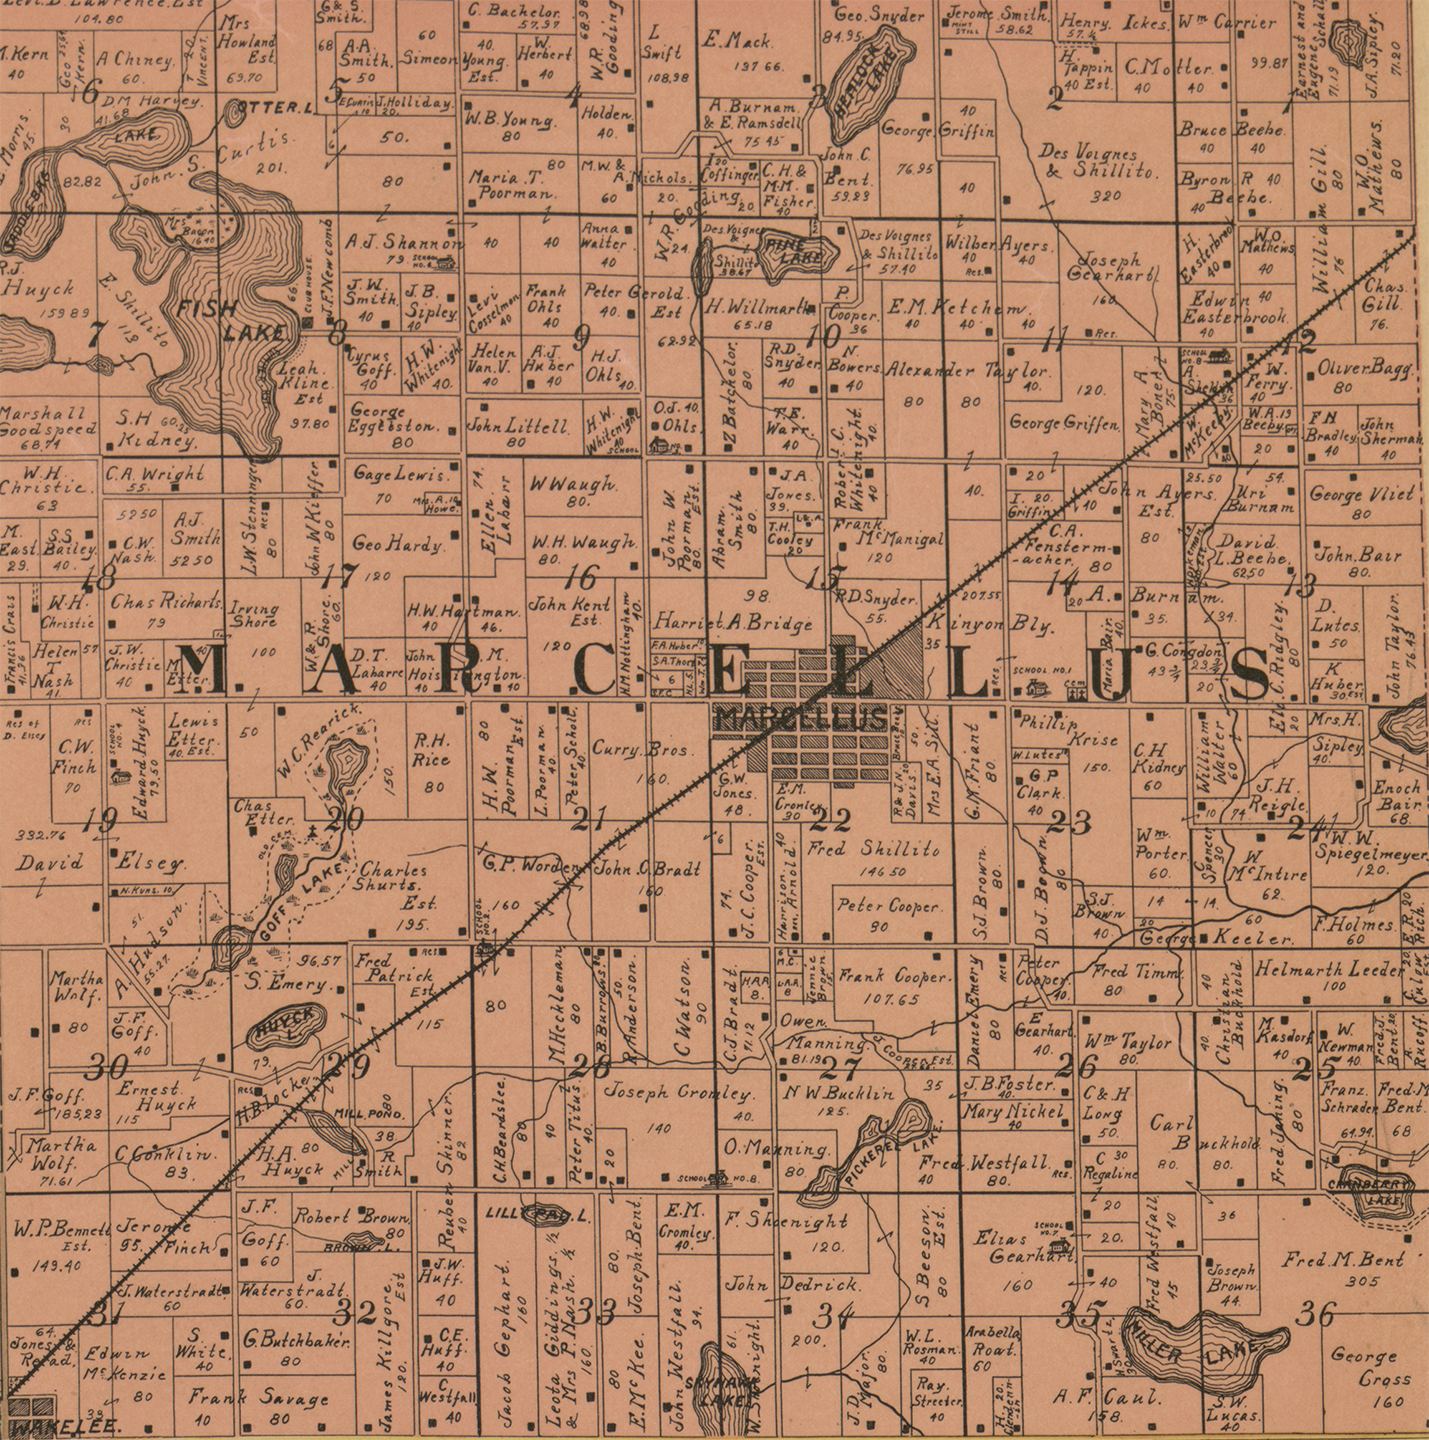 1897 Cass, Berrien, and Van Buren Michigan landownership map